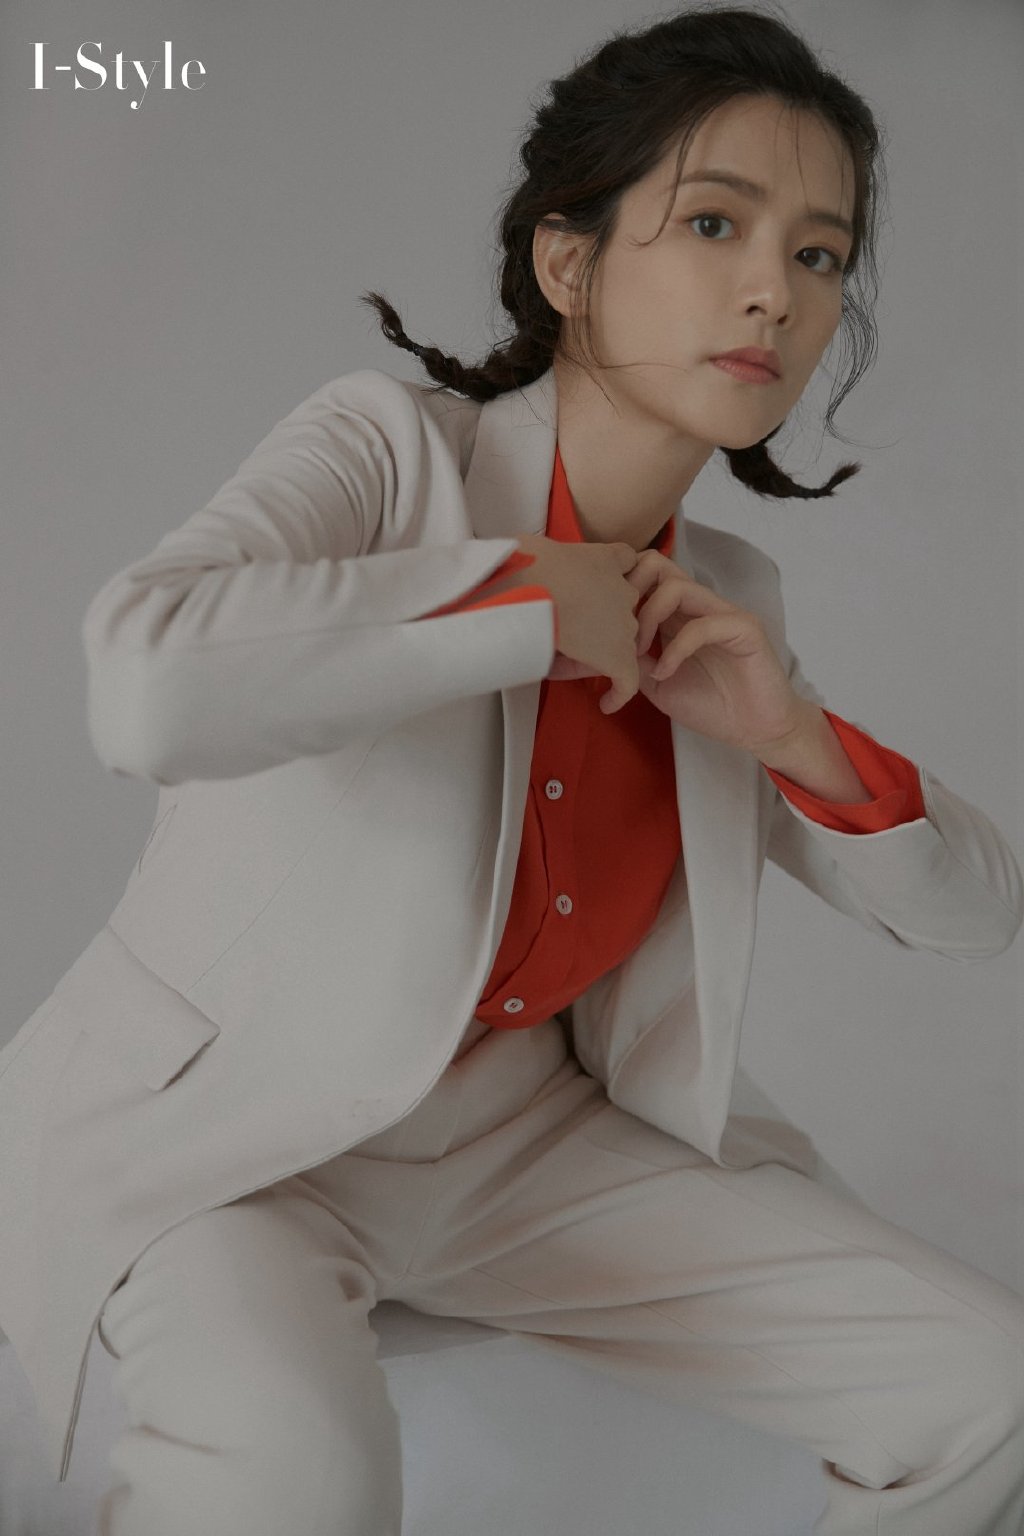 陈昊宇酷美时尚白衣西服套装红衬衫搭配个性<span style='color:red;'>杂志</span>写真大片